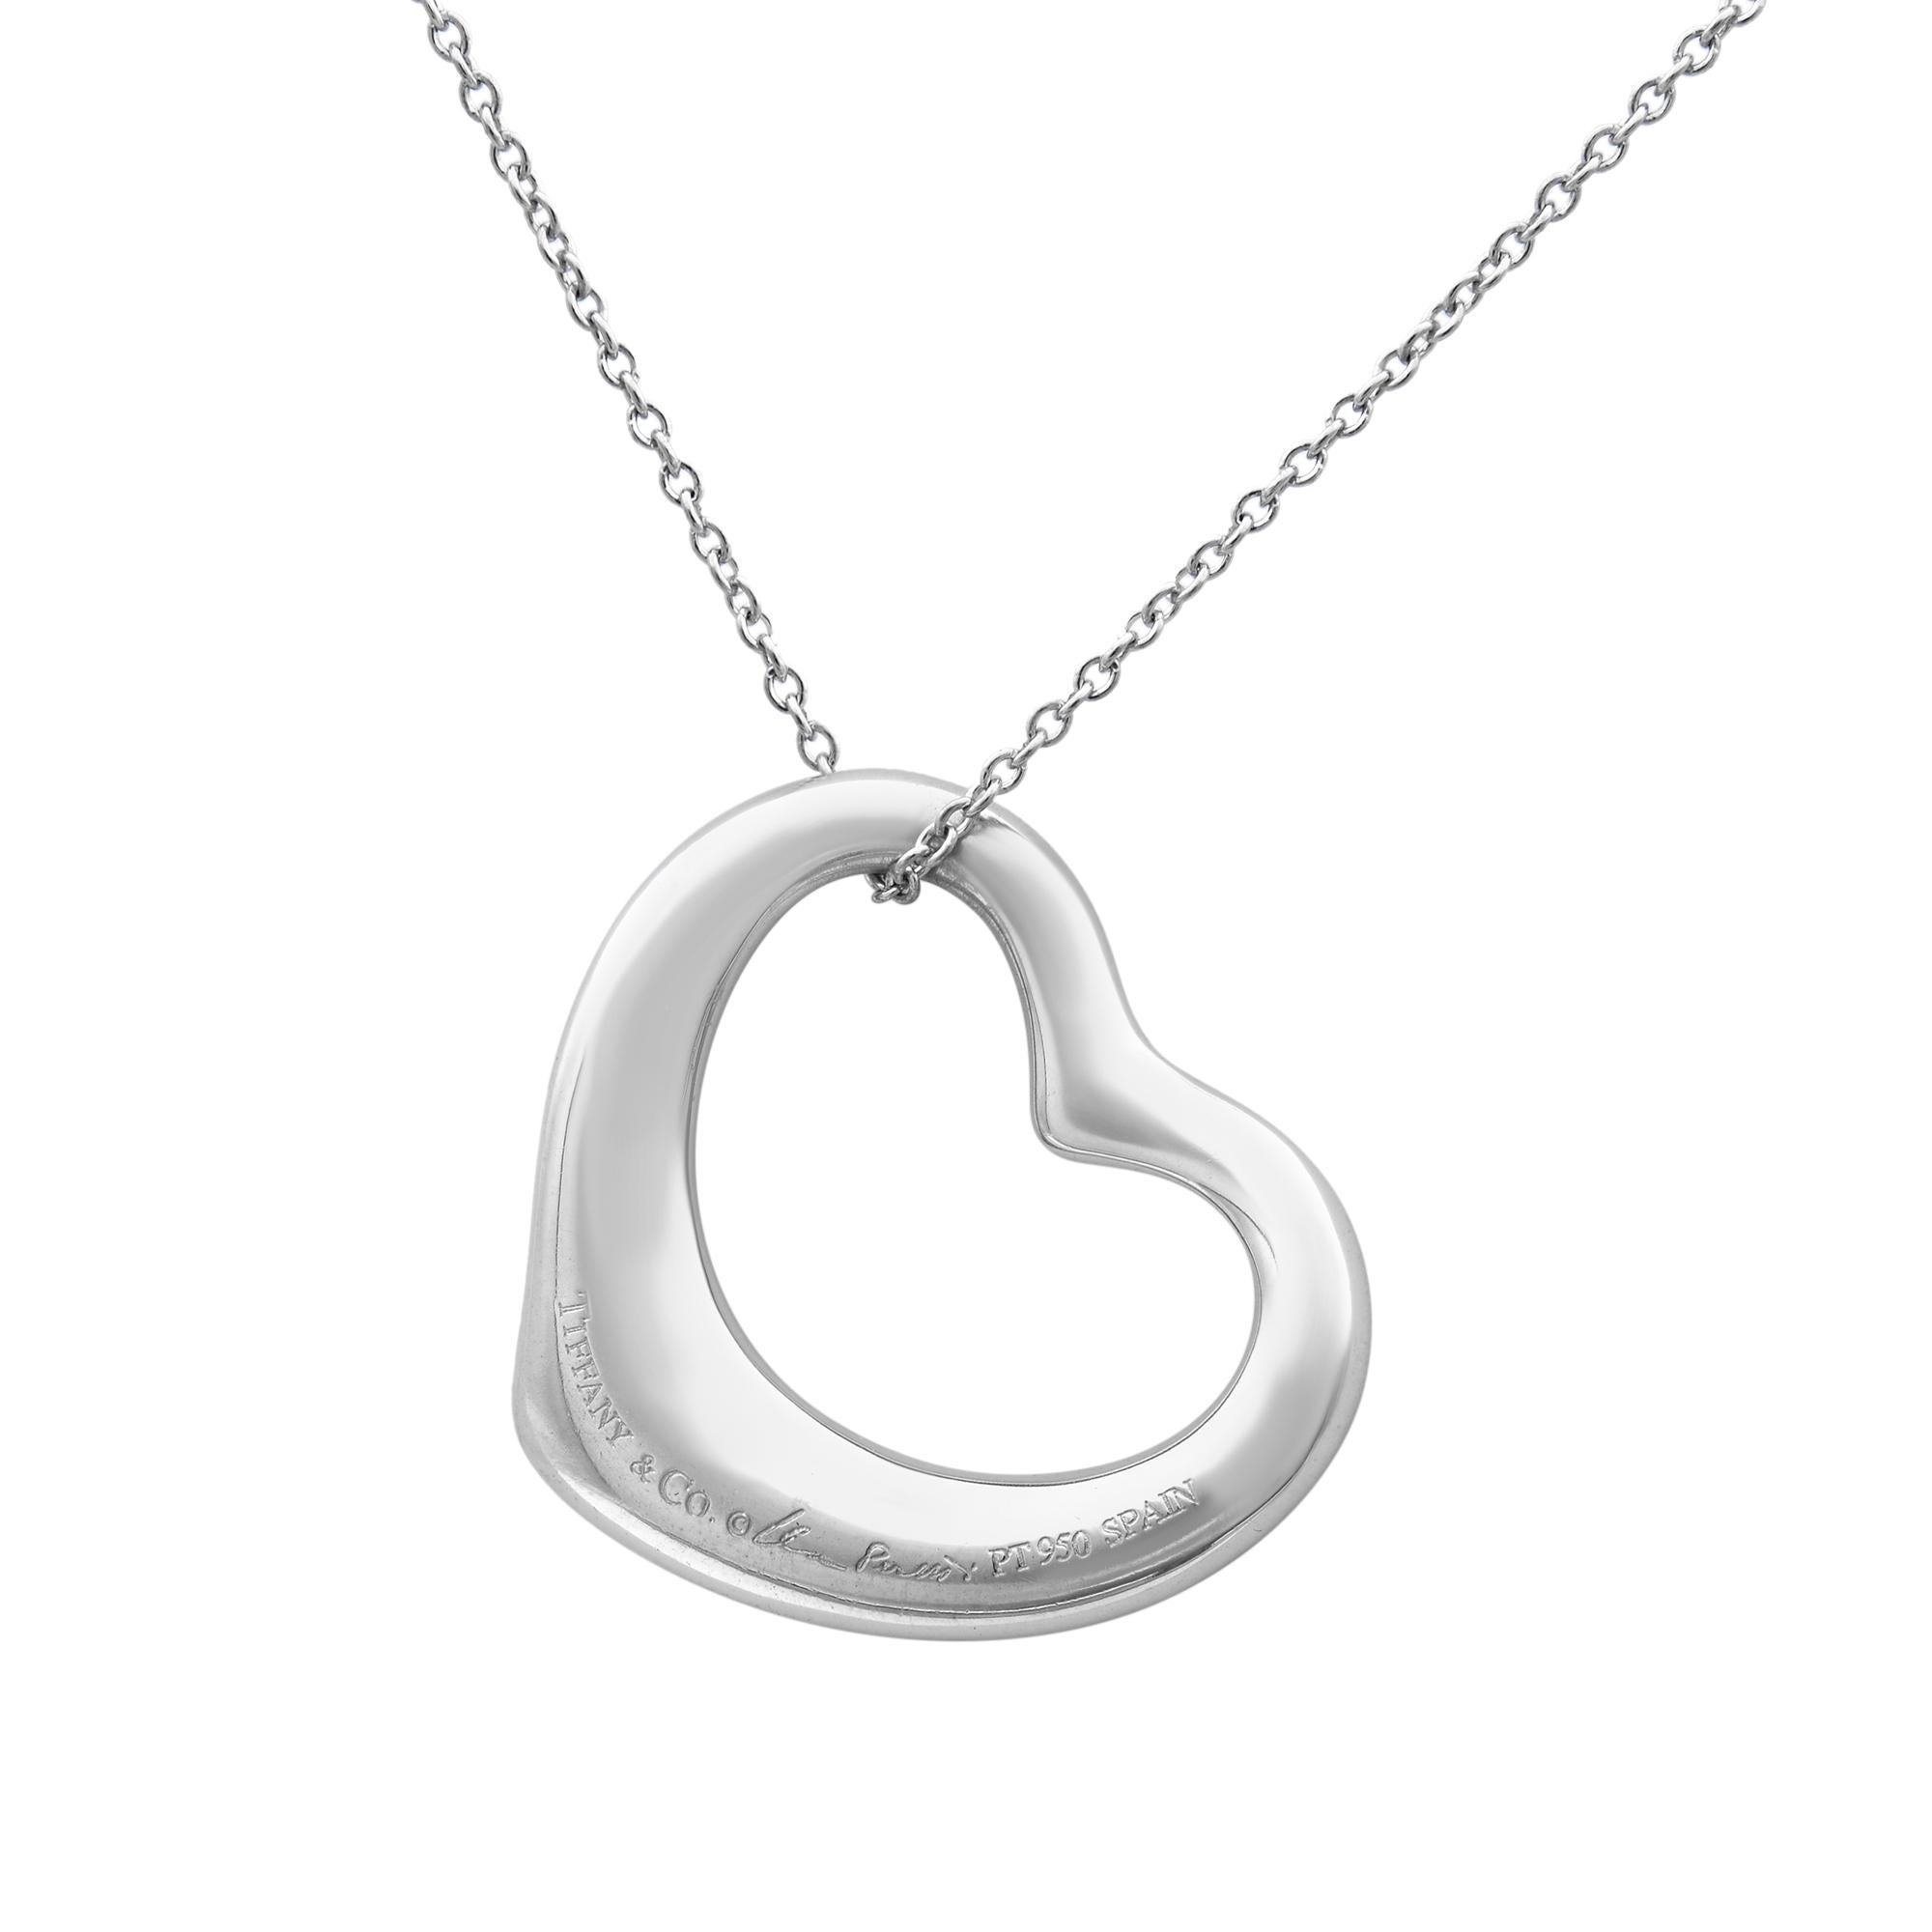 Pendentif en forme de cœur en platine avec diamants pavés de la collection Elsa Peretti de Tiffany & S. Les designs Open Heart célèbrent l'esprit de l'amour. Des diamants éblouissants accentuent les belles courbes de ce pendentif. Au total, 0,95 ct